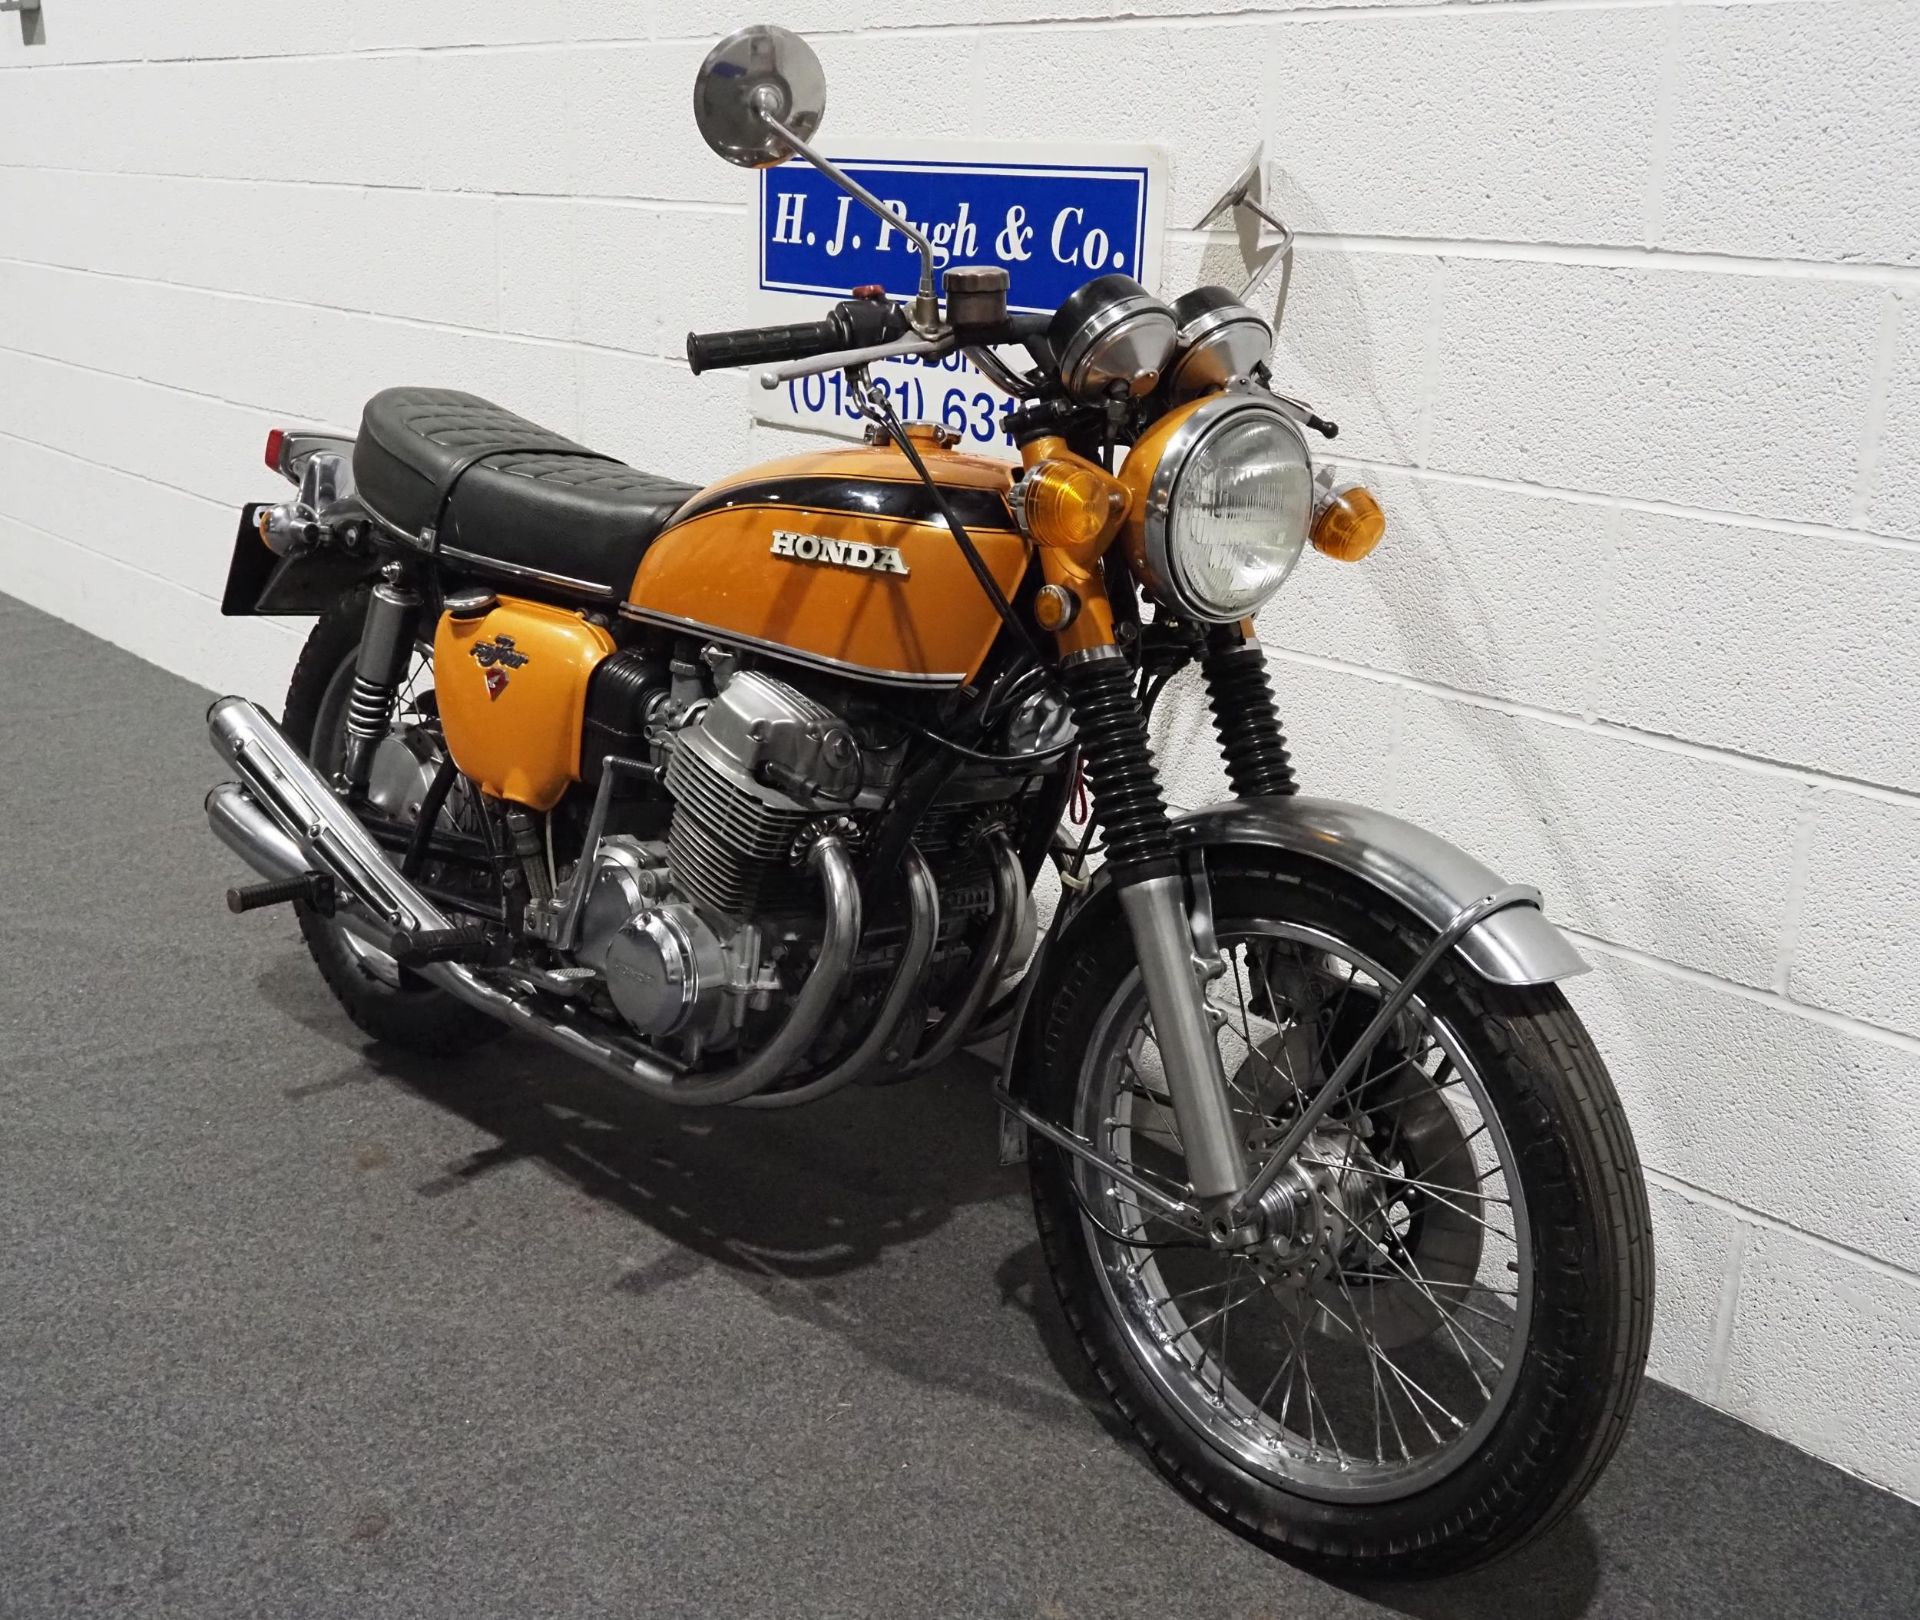 Honda 750-4 motorcycle, 1971, 750cc Frame no. CB7501118119 Engine no. CB7501117934 Runs and rides, - Image 3 of 8